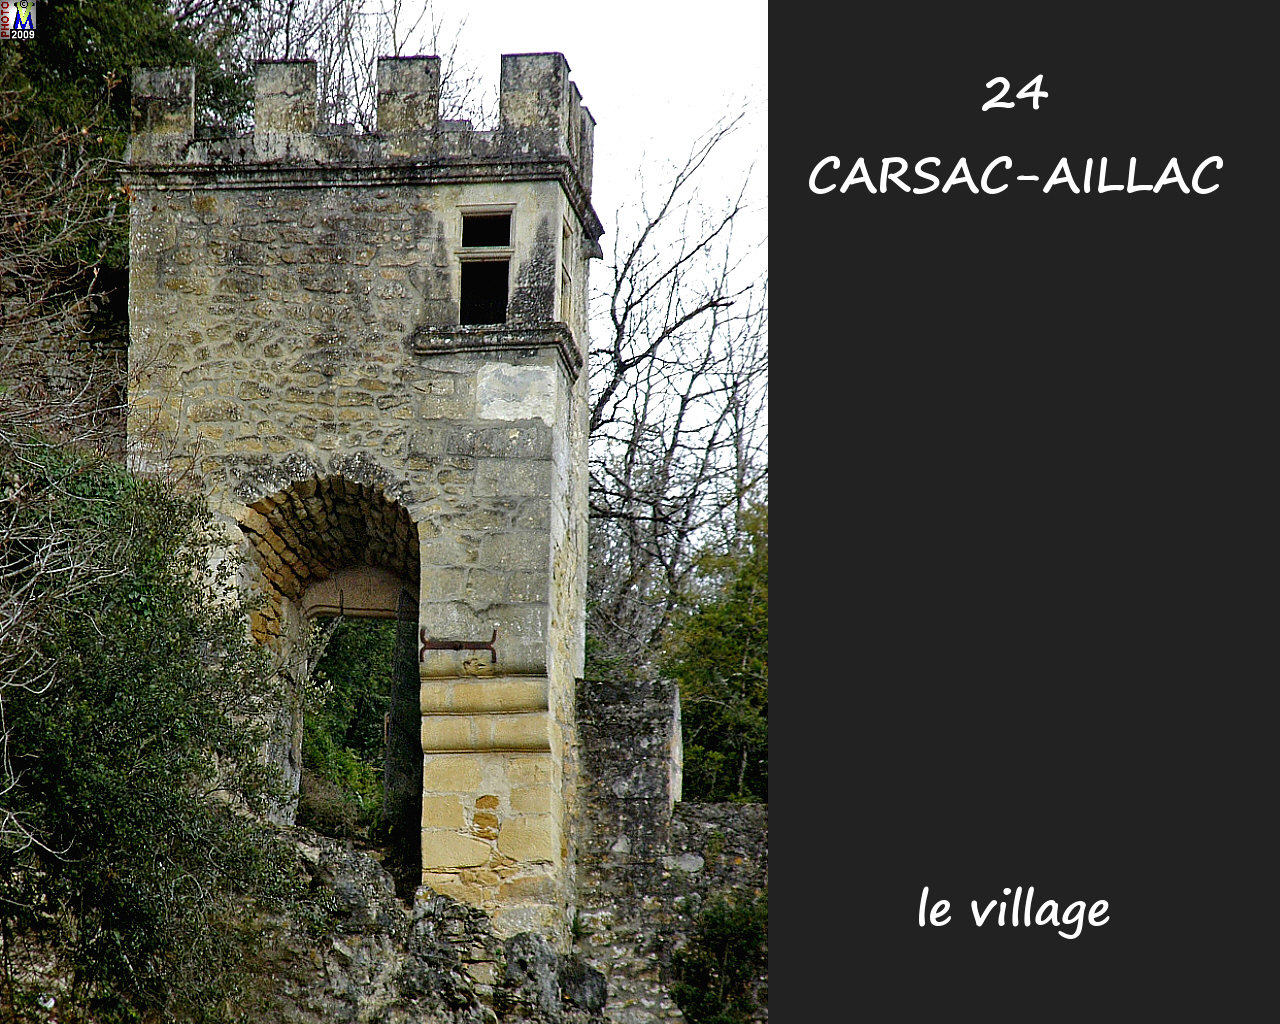 24CARSAC-AILLAC_village_106.jpg